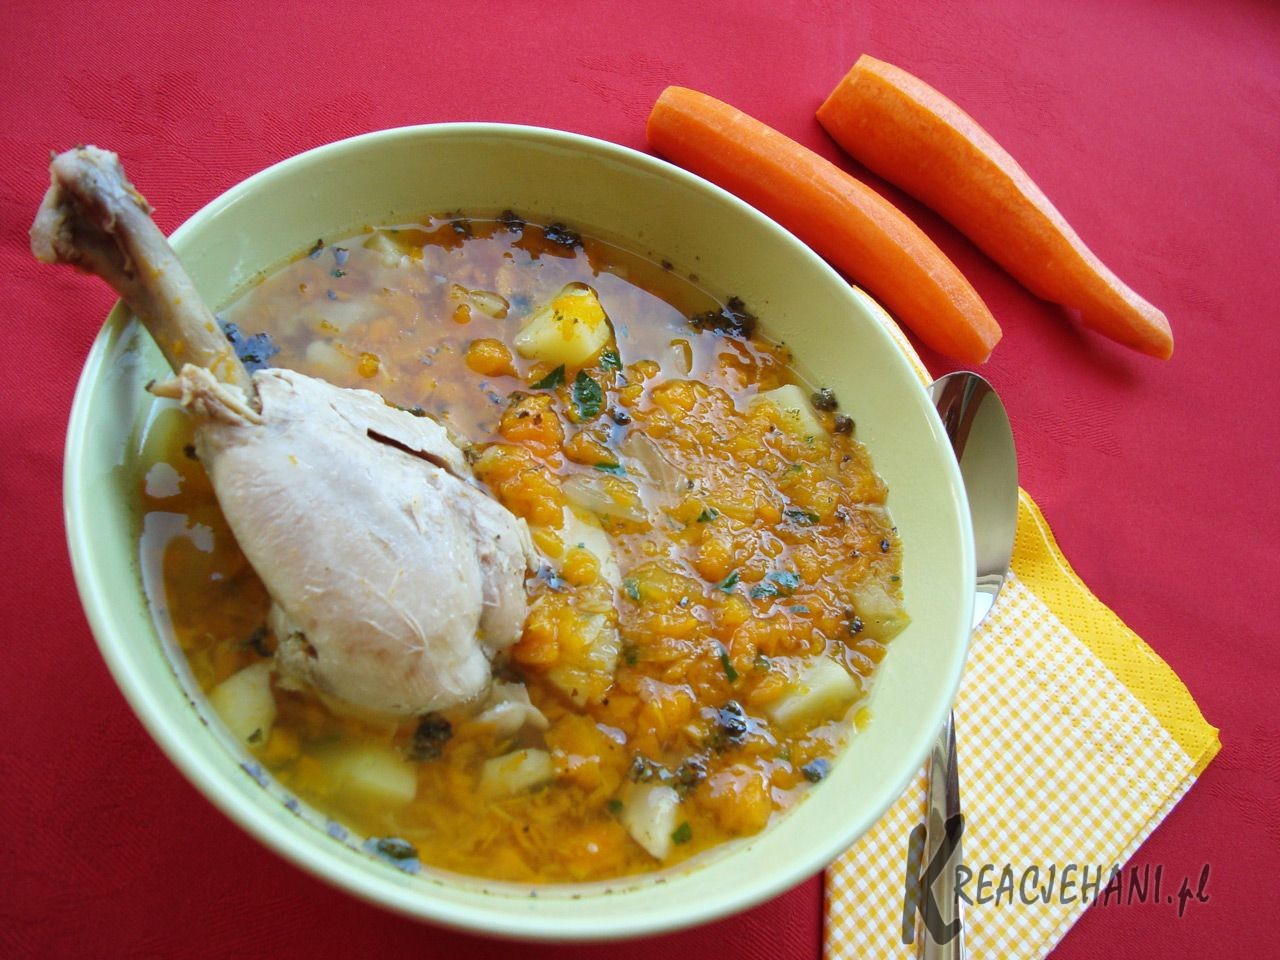 Jak ugotować zupę marchwiankę?